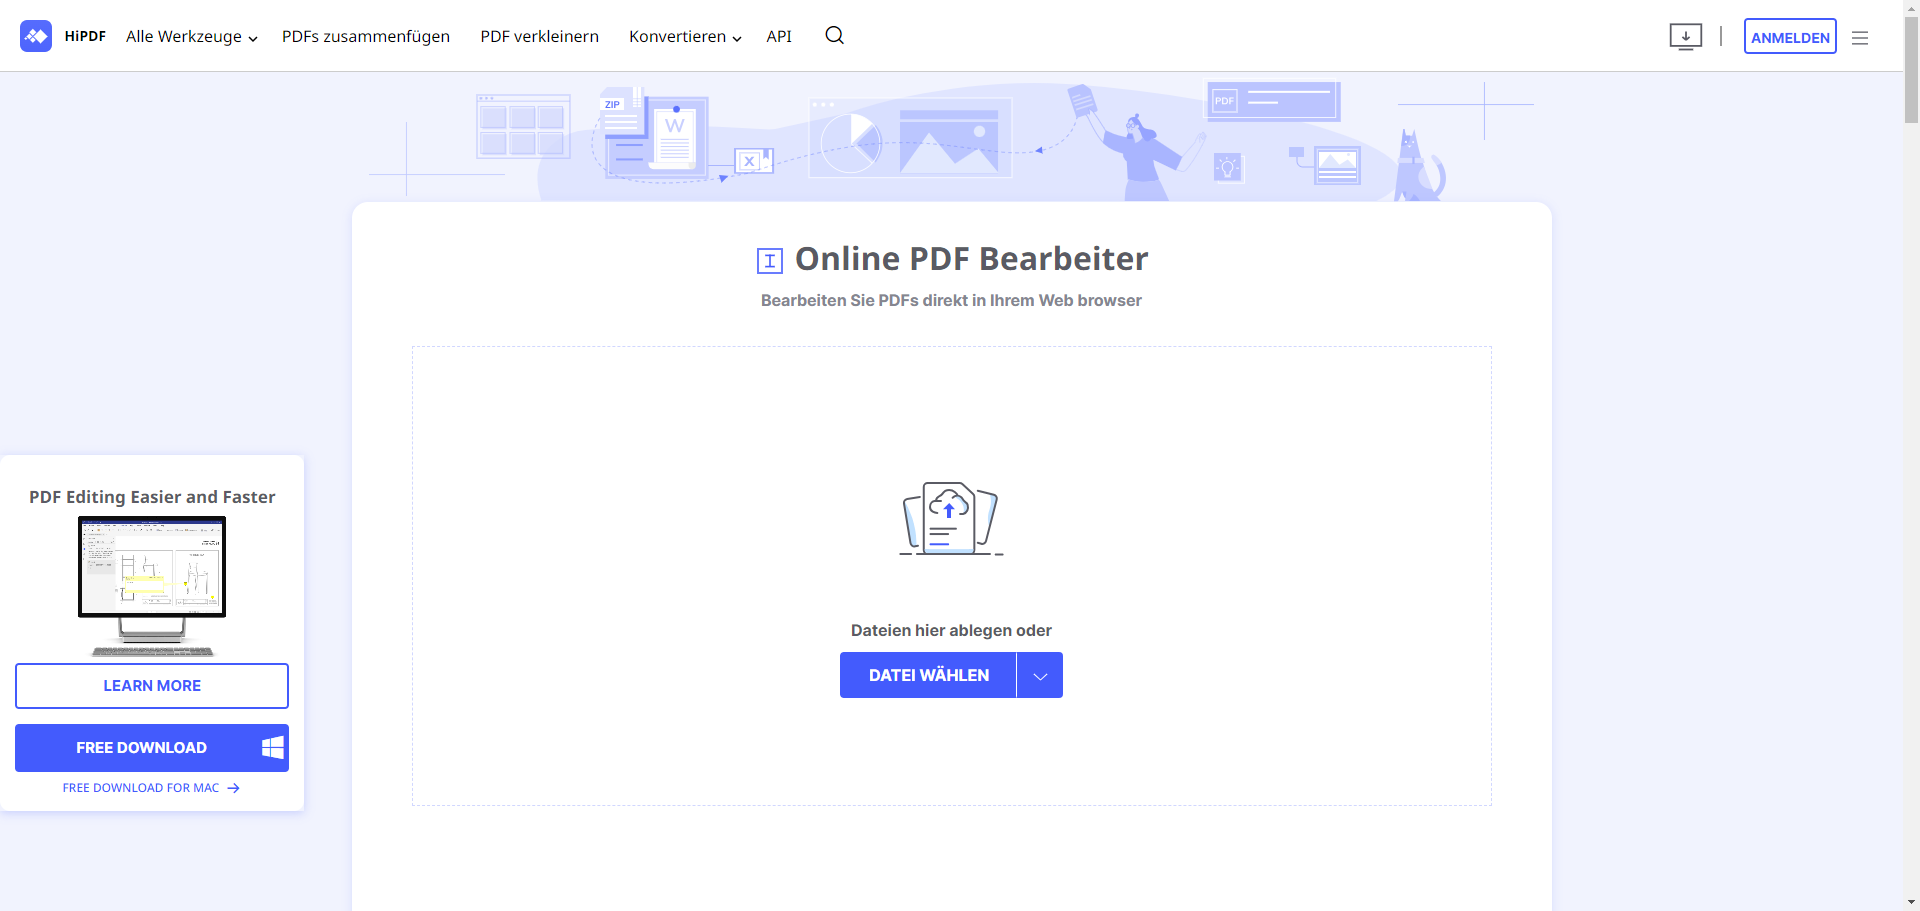 Wenn Sie sich auf dem Online-PDF-Editor von HiPDF befinden, wählen Sie die Schaltfläche "PDF hochladen". Sie können Ihre PDF-Datei von Ihrem Gerät, Dropbox oder Google Drive hochladen.